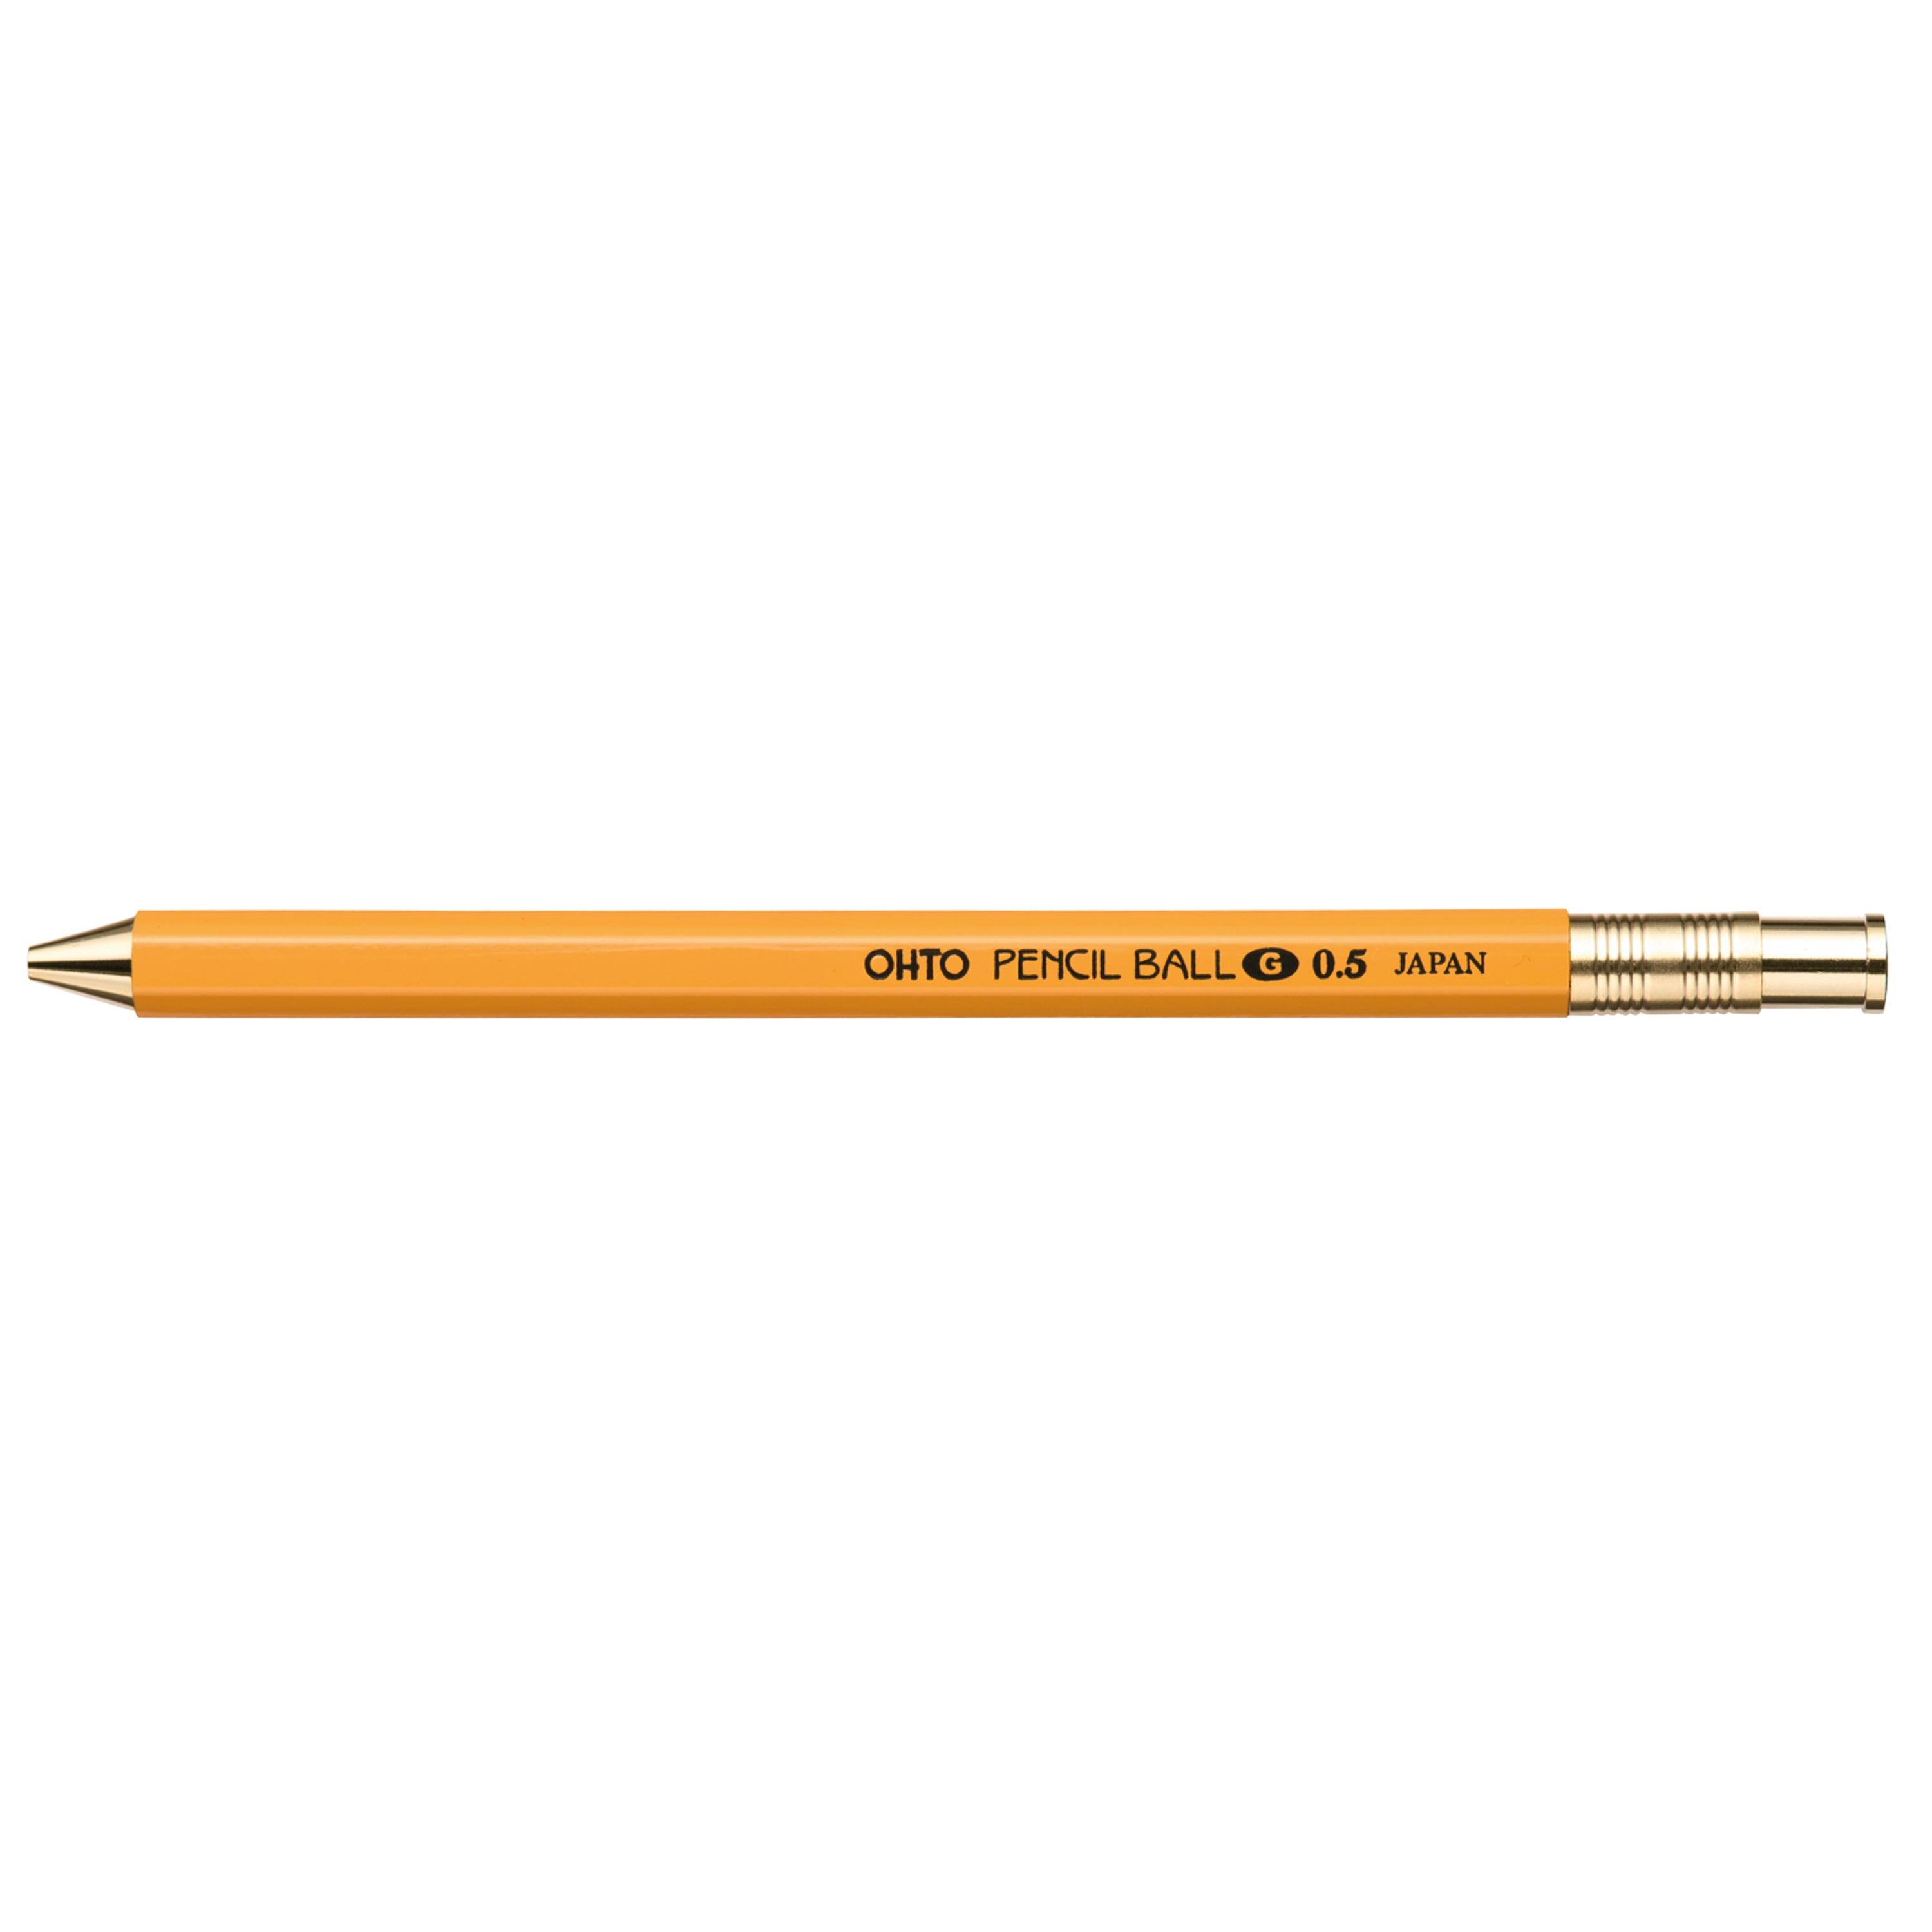 OHTO Pencil Ball G 0.5 Pen / Yellow